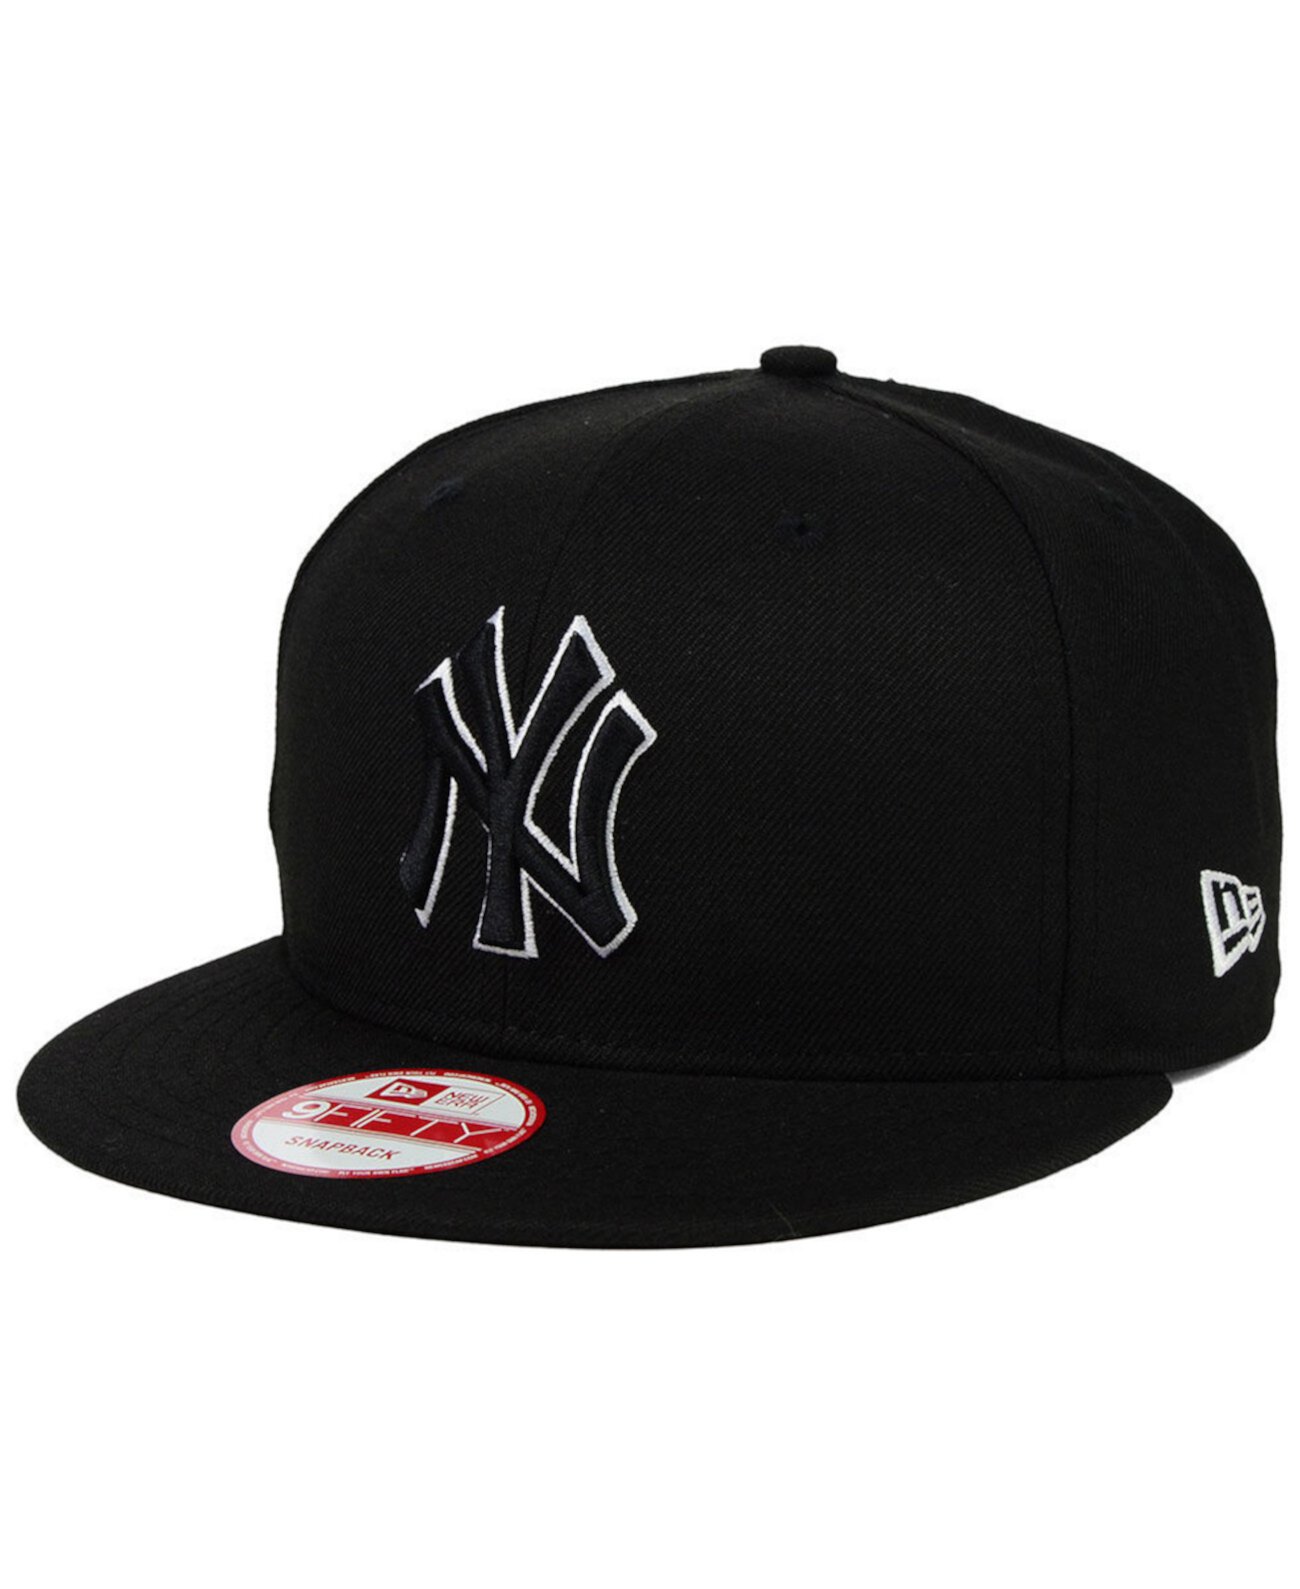 Нью-Йорк Янкиз Черный Белый 9FIFTY Snapback Cap New Era